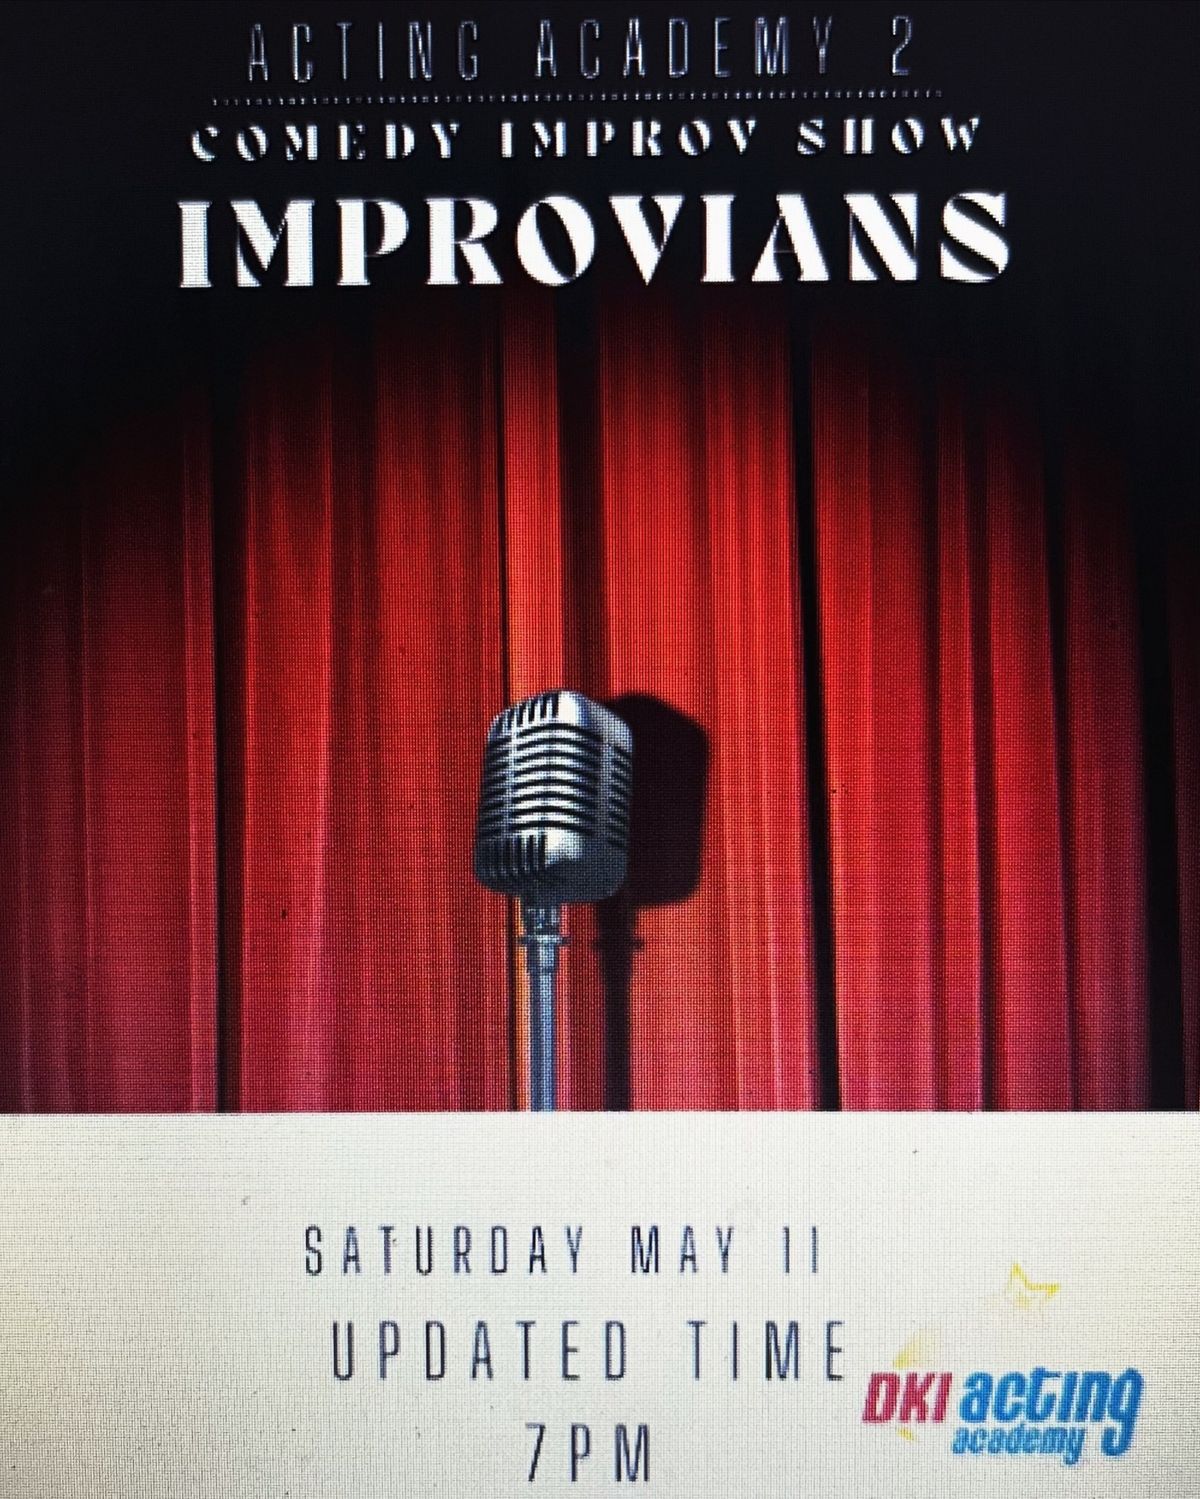 Improvians Comedy Improv Show